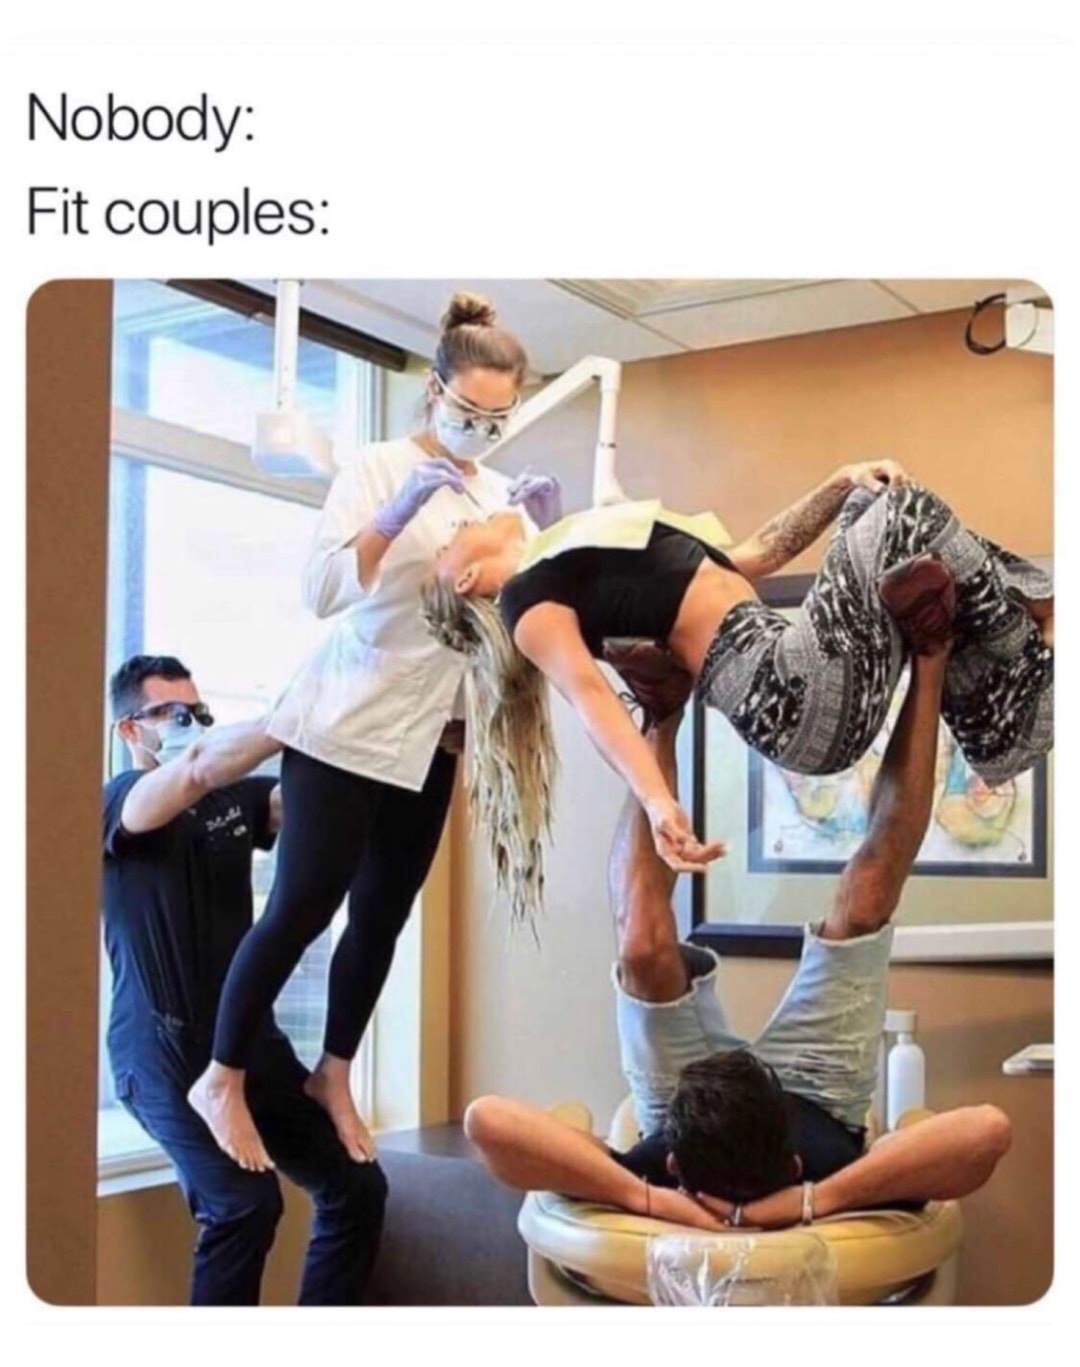 fit couples - meme